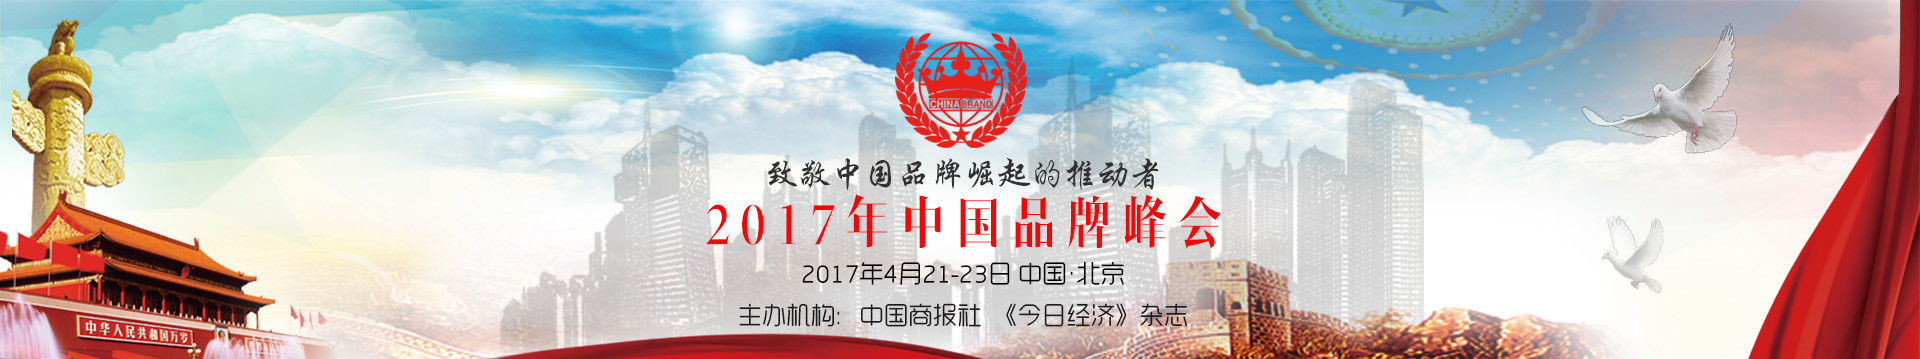 2017中国品牌峰会